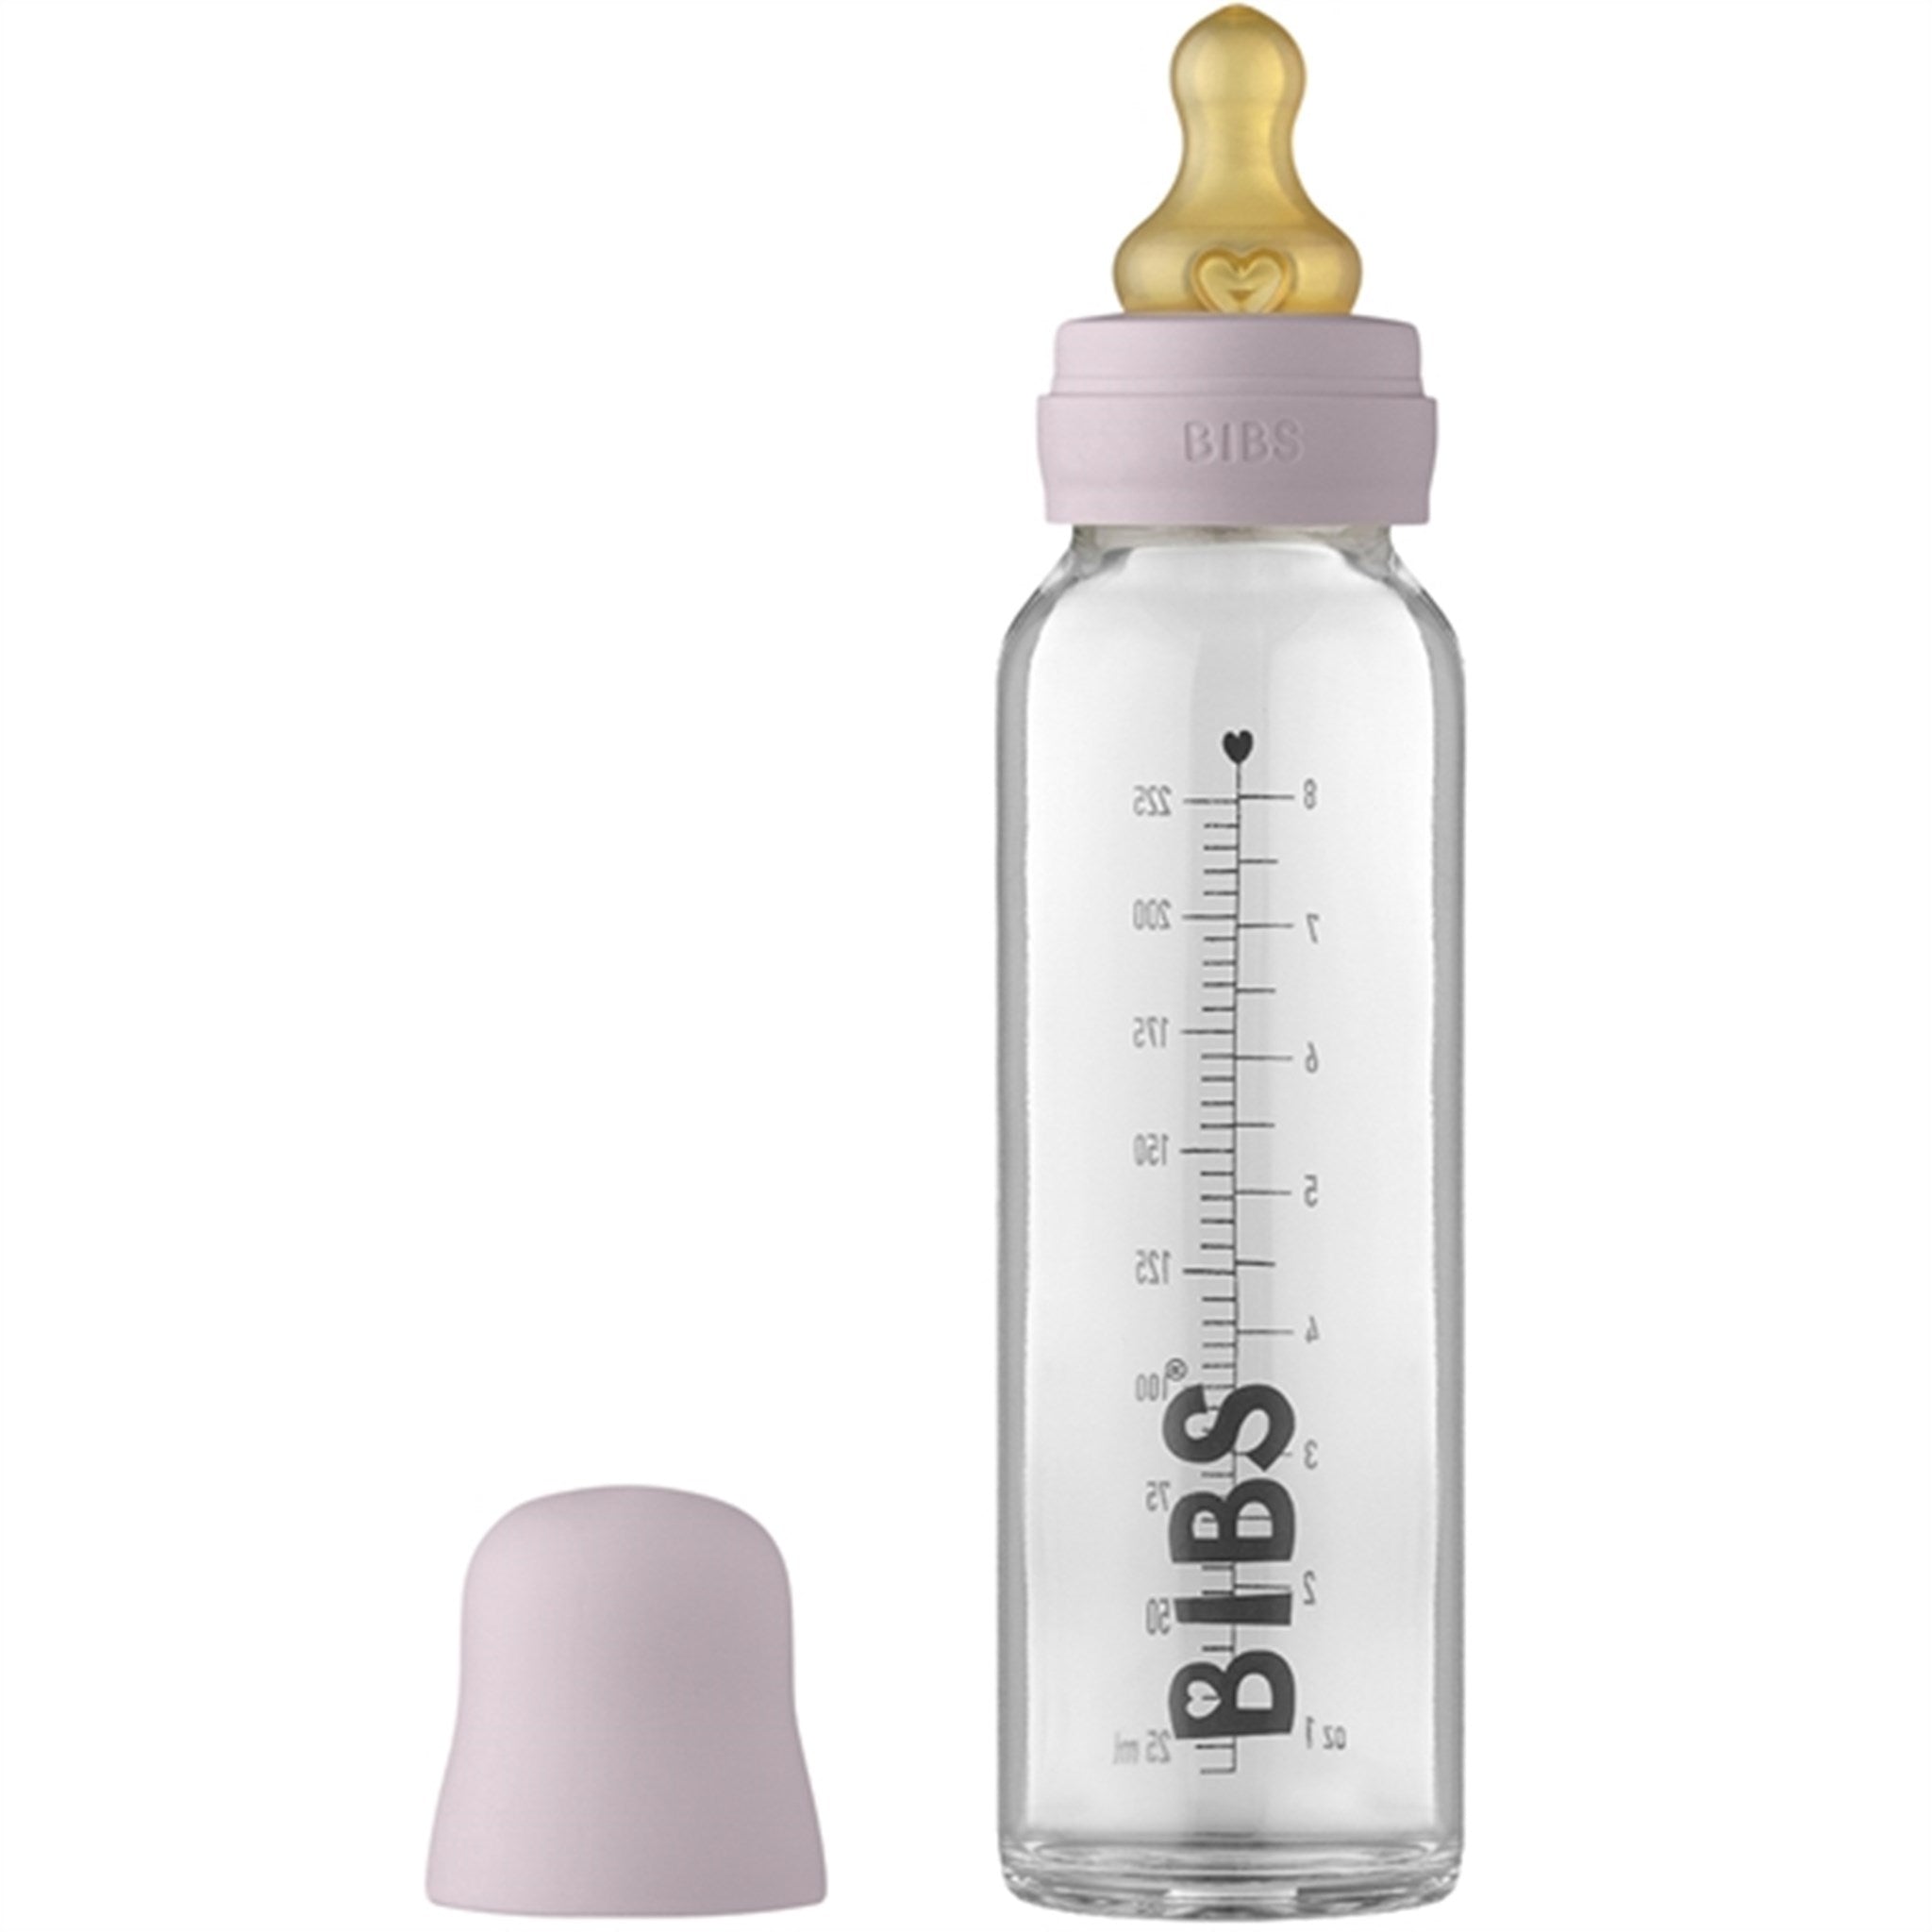 Bibs Sutteflaske Complete Set Dusty Lilac 225 ml